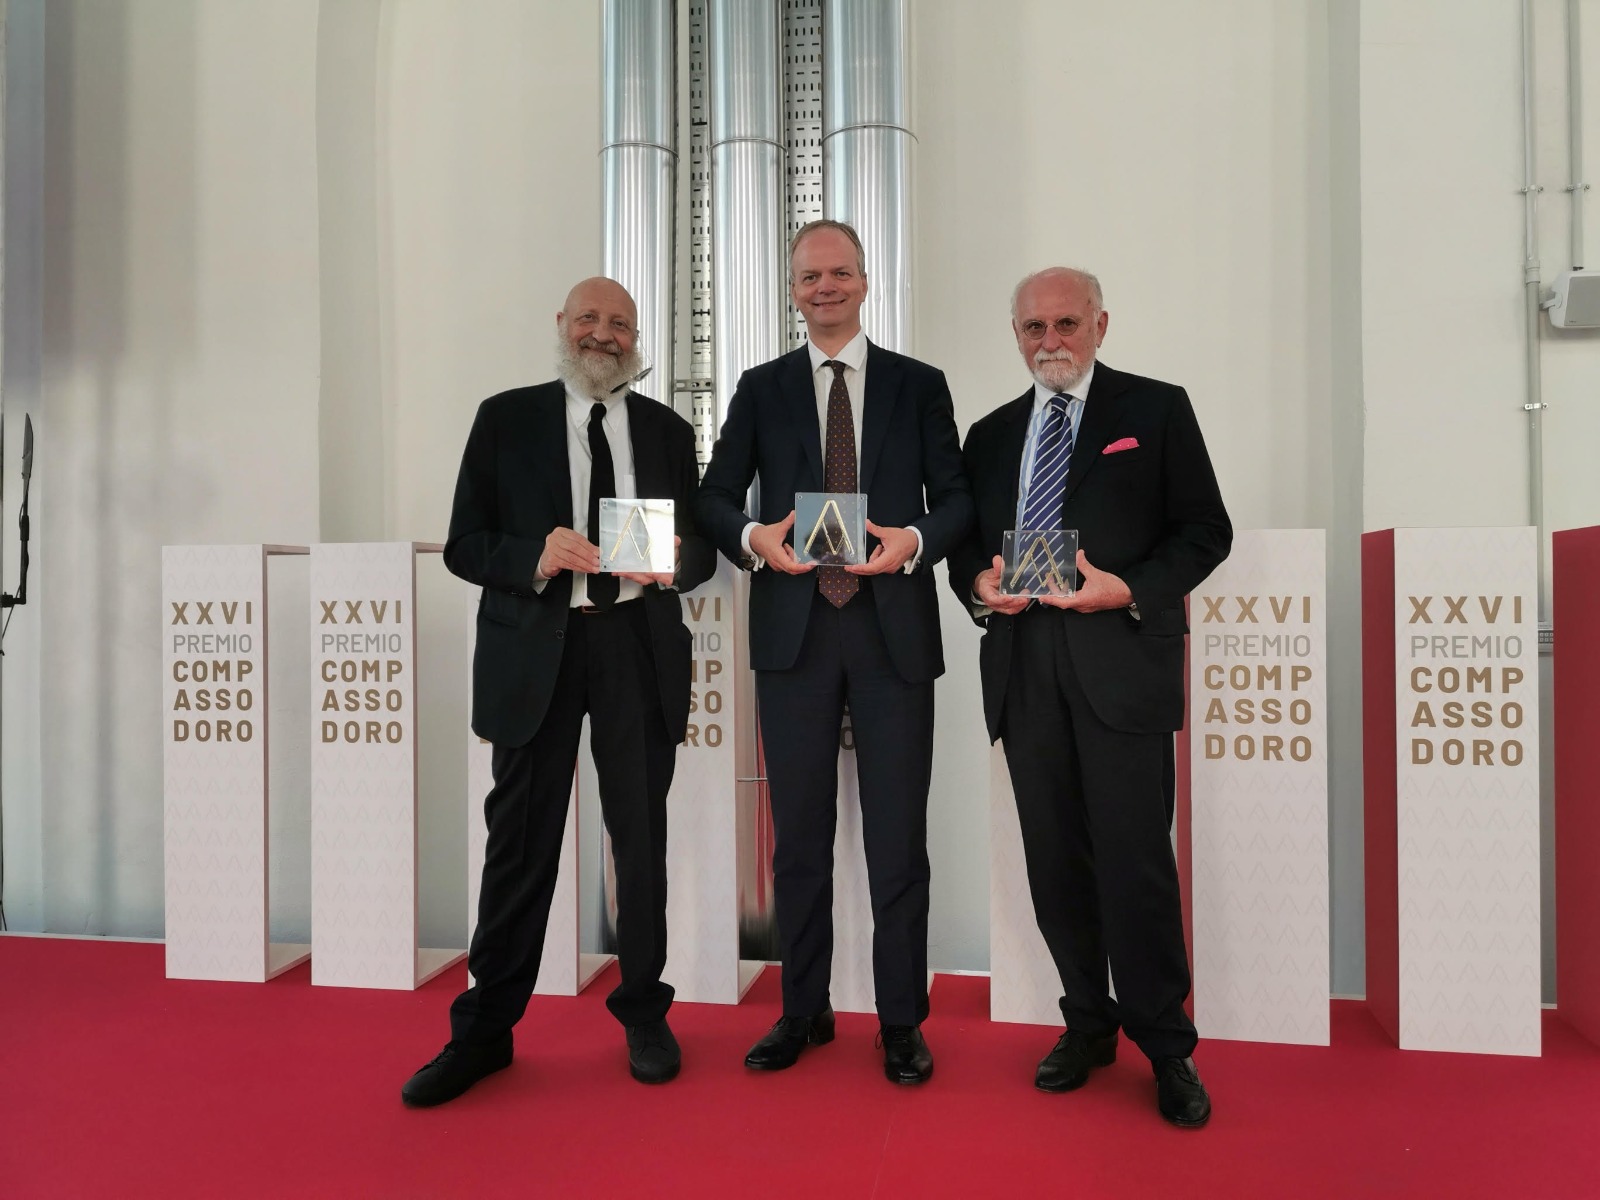 Gli Uffizi vincono il premio "Compasso d'Oro" per il design di comunicazione